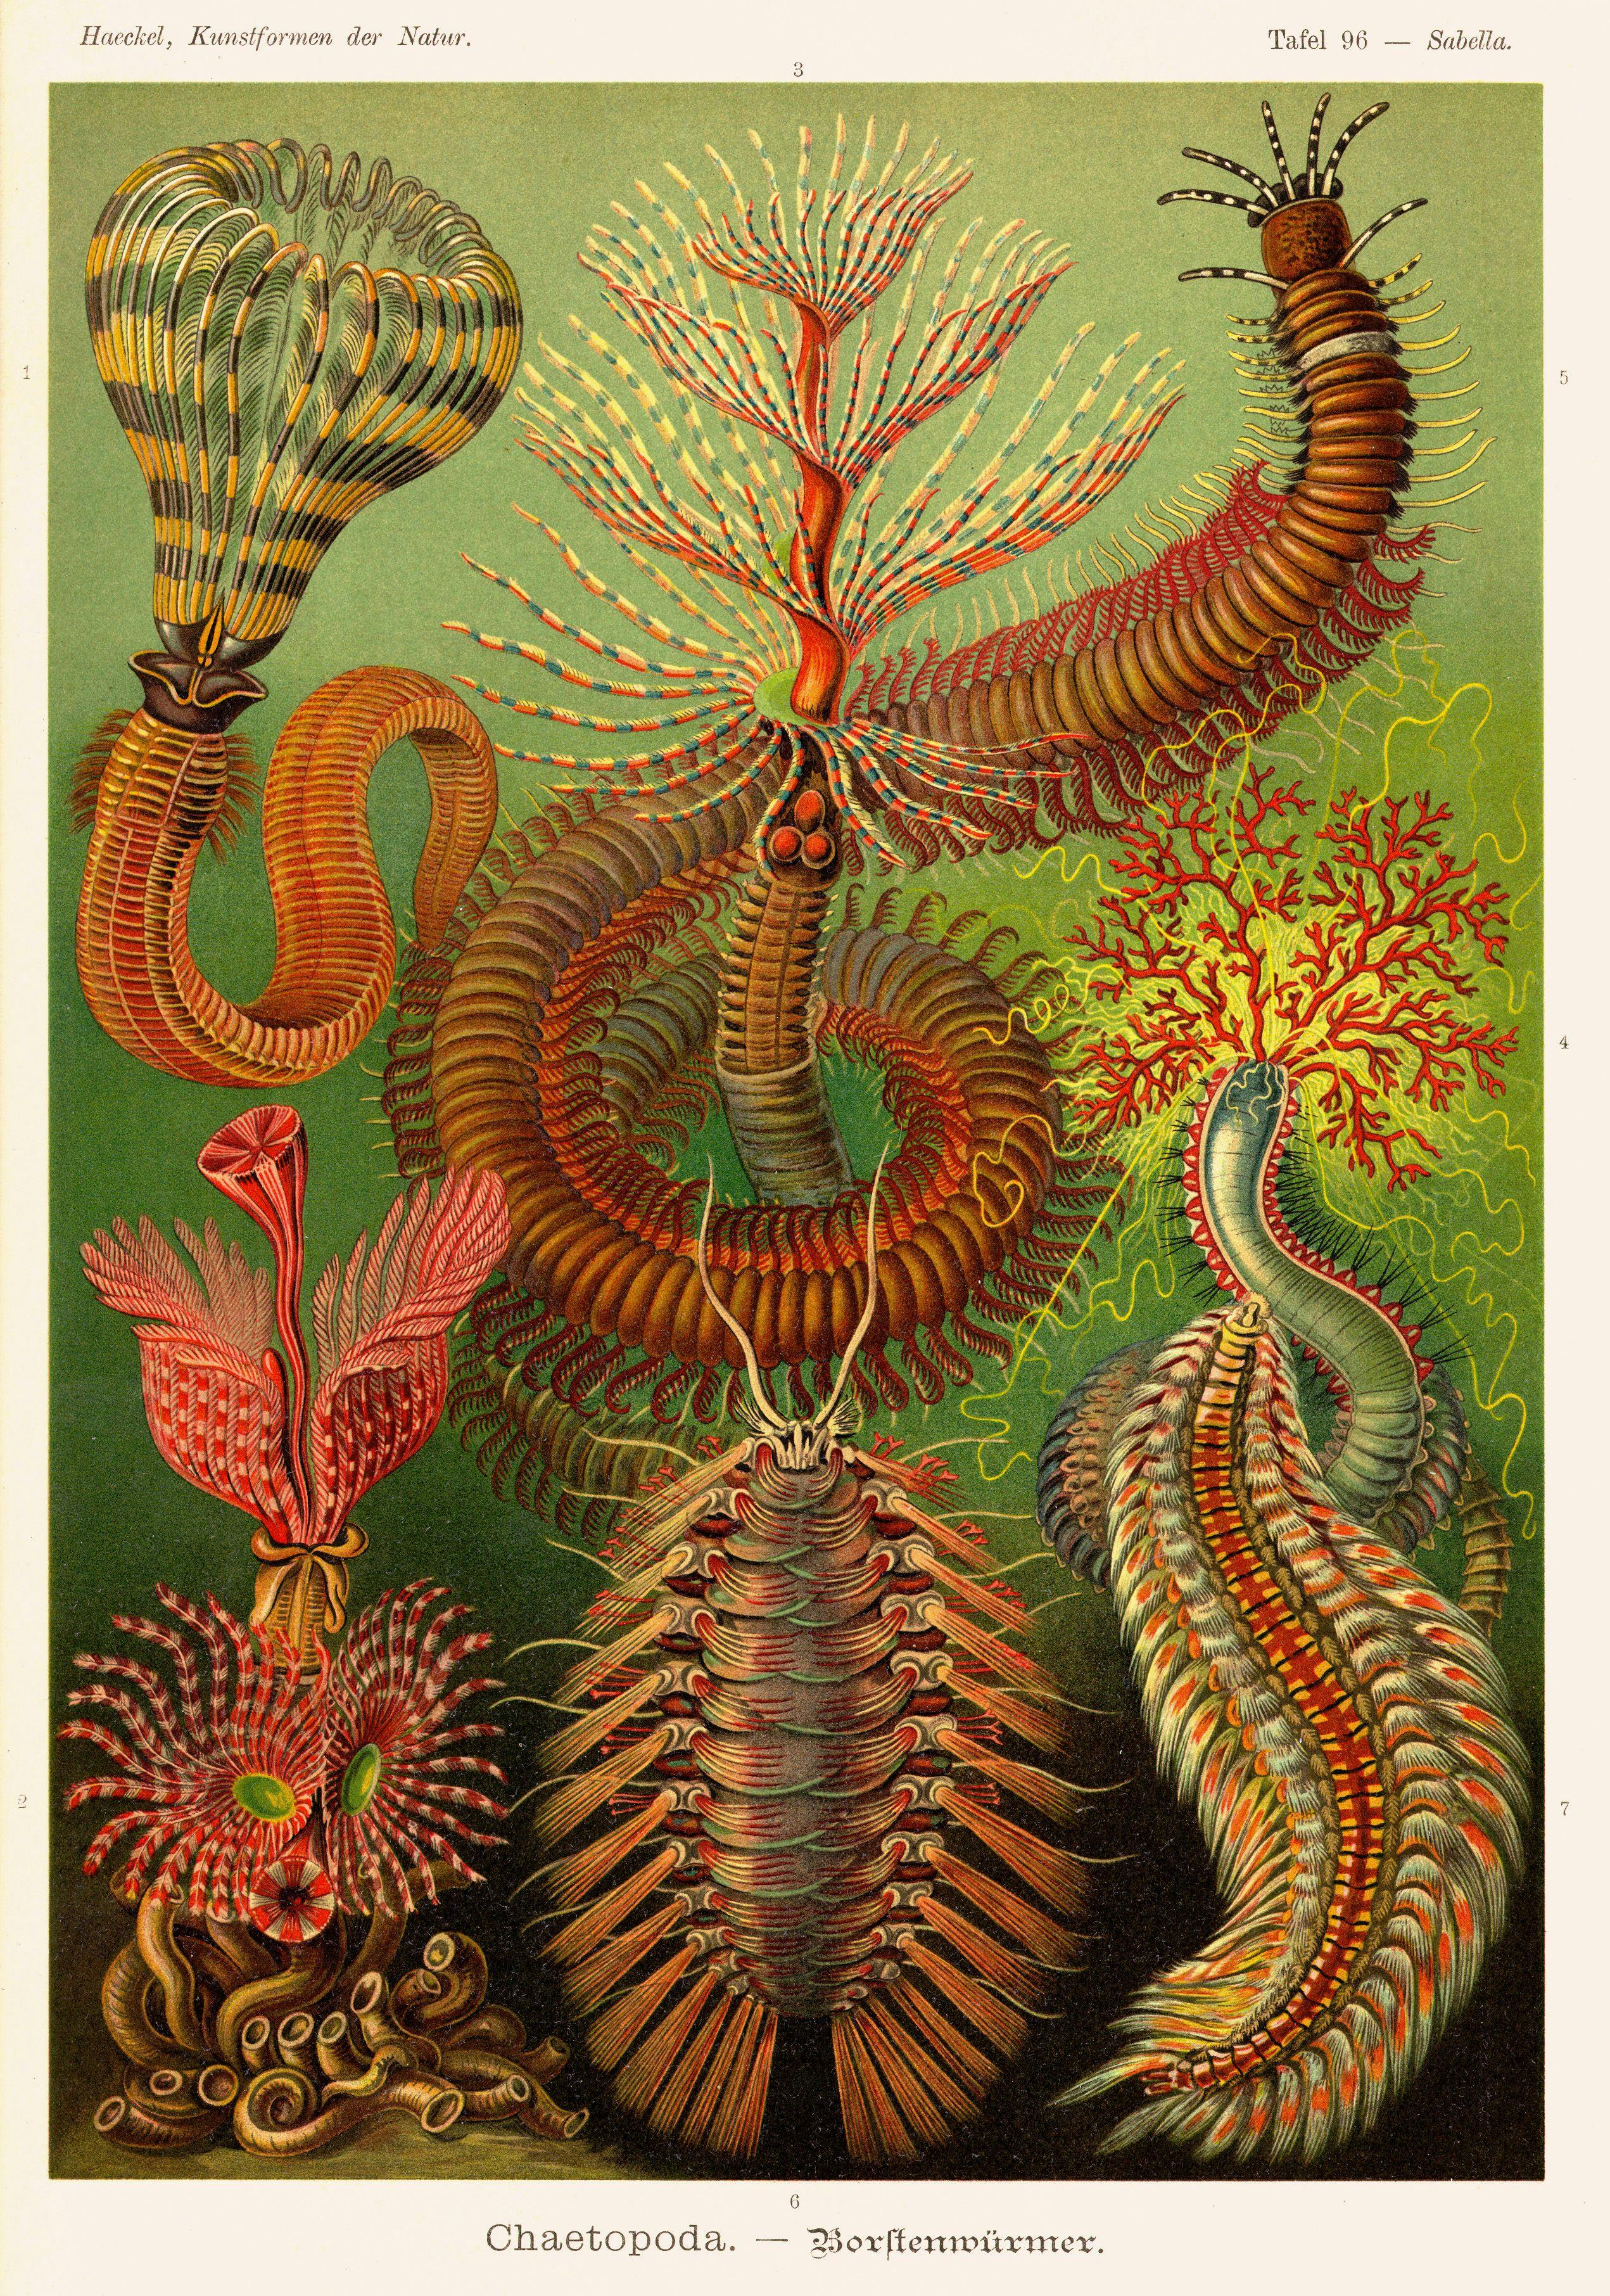 Art work: Ernst Haeckel, Kunstformen der Natur, plate 96, 1899–1904